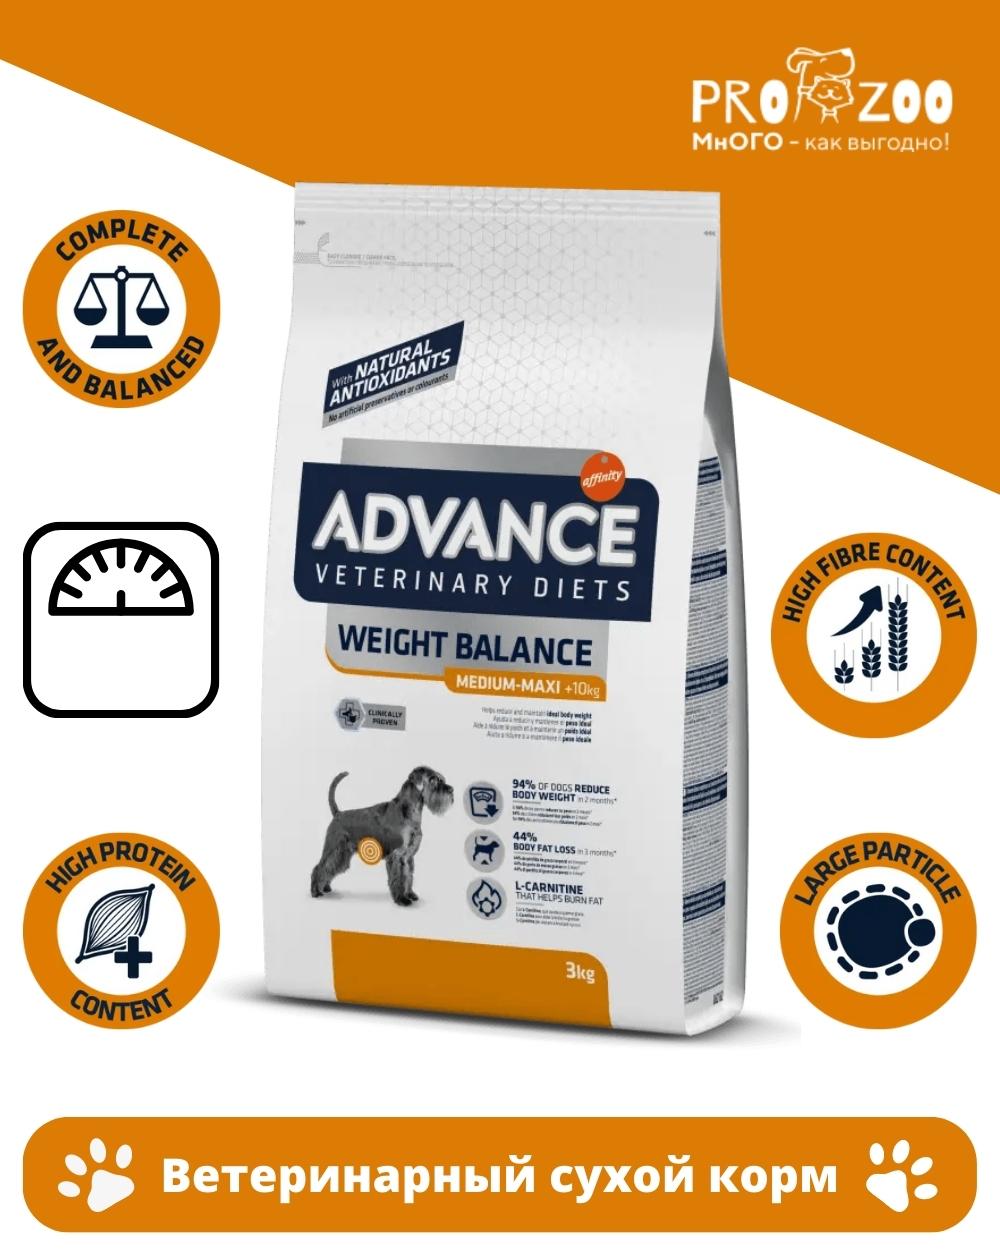 Сухой корм Advance VetDiet Weight Balance для собак страдающих ожирением, контроль веса, индейка, 3 кг 1